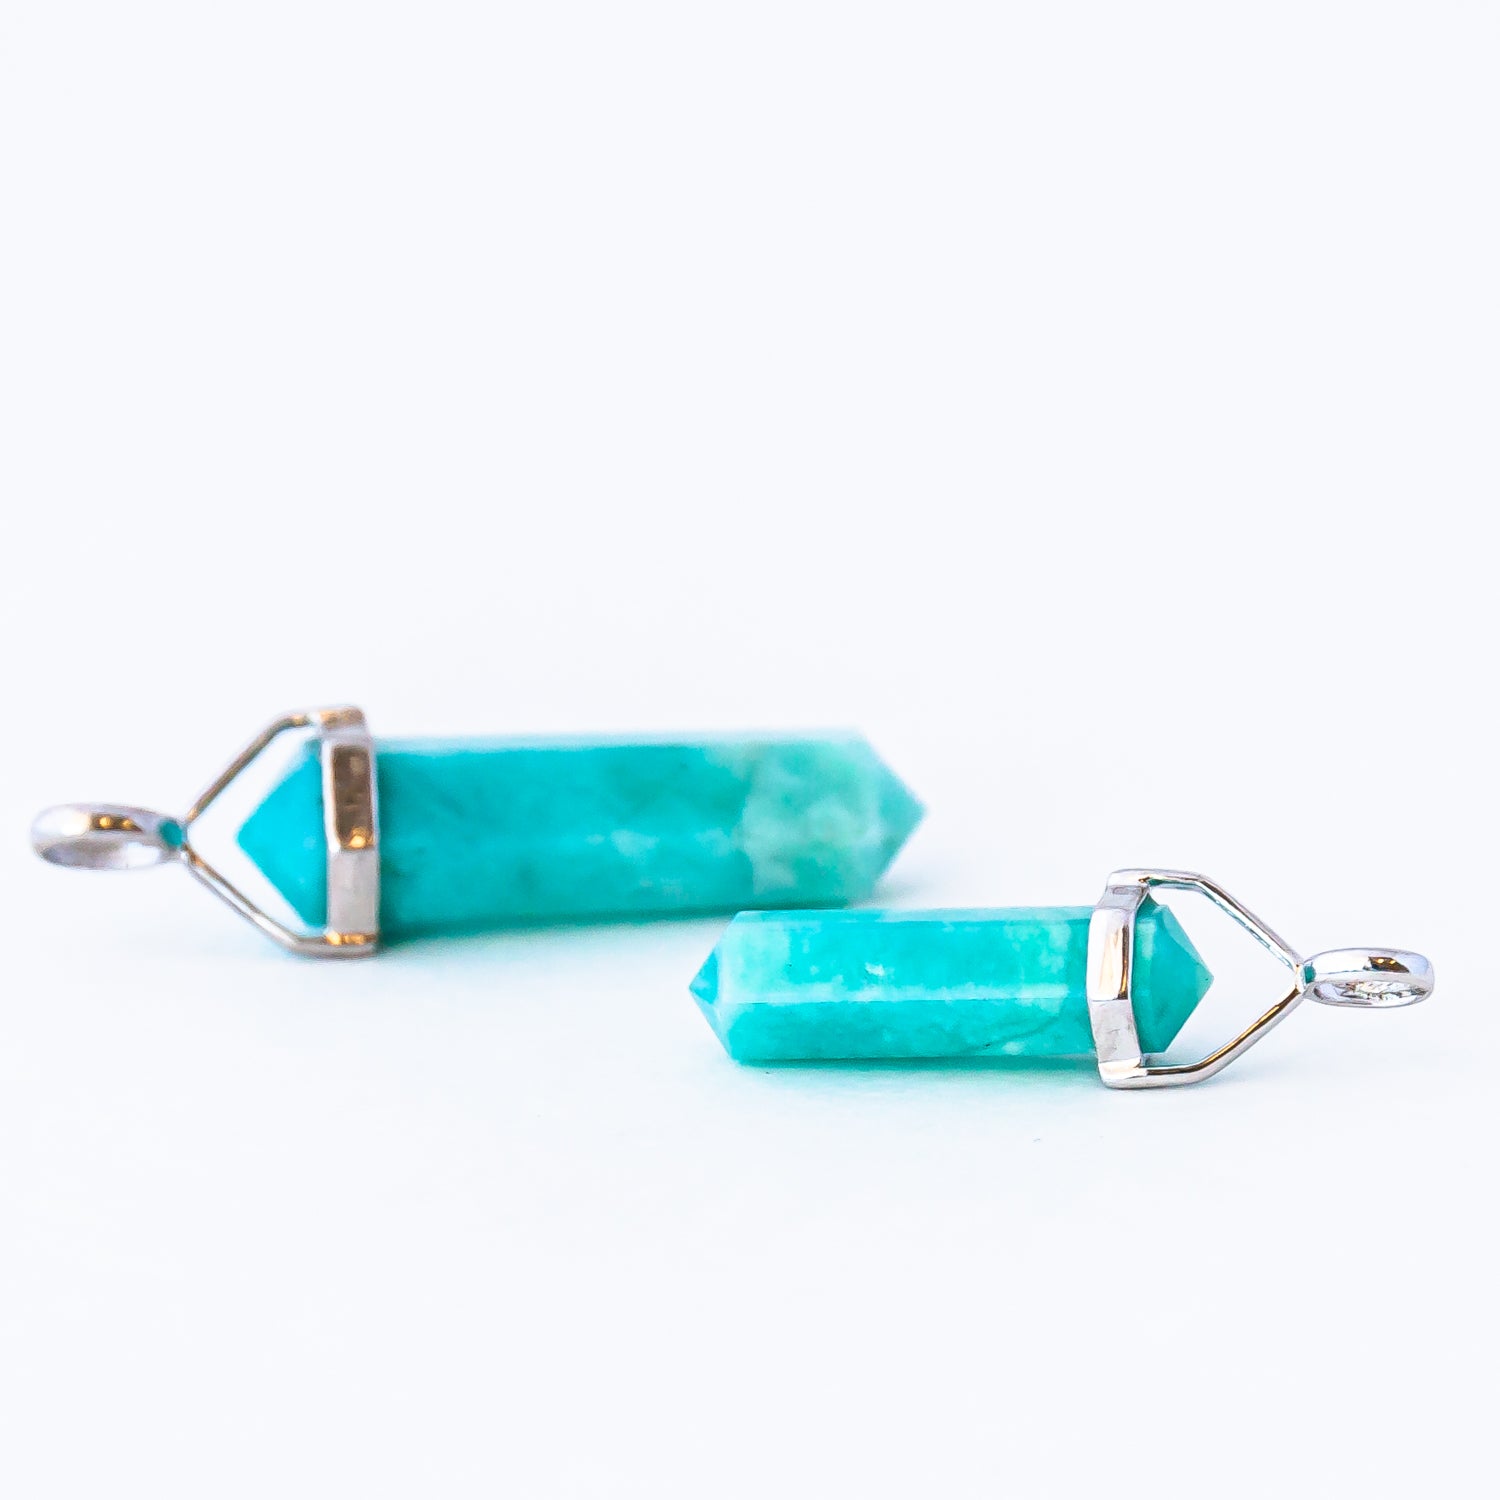 Two amazonite crystal pendants.